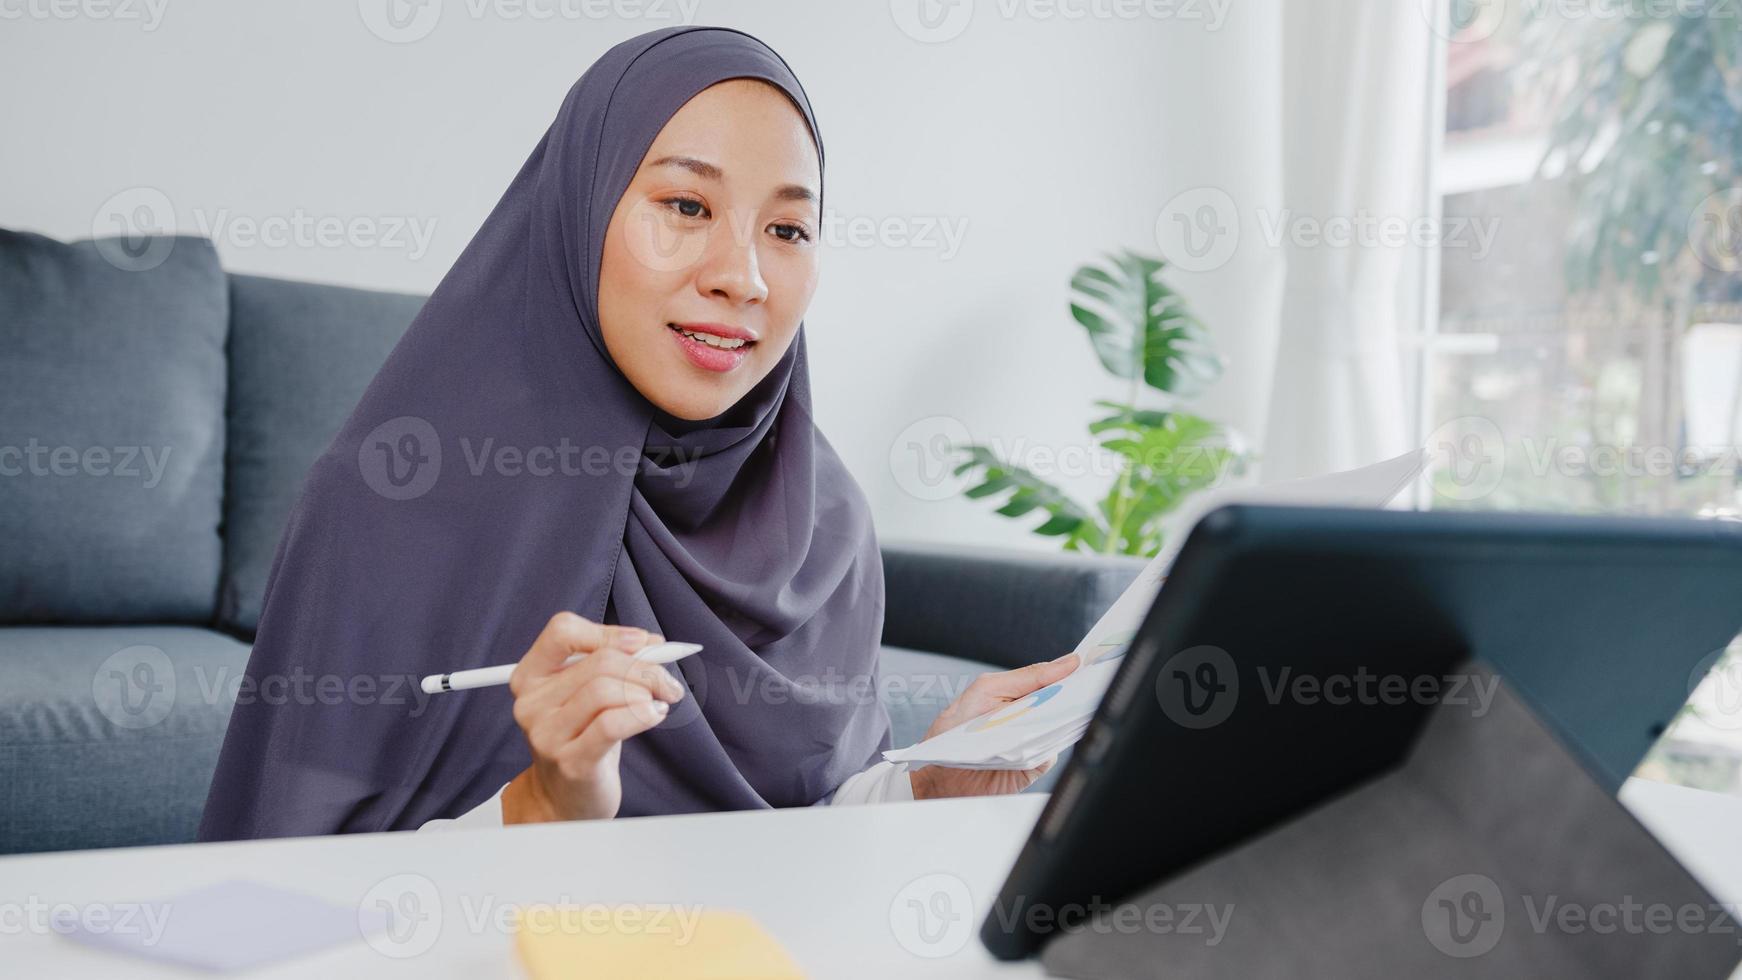 asia musulmana signora indossare foulard uso casuale tablet parlare con i colleghi del rapporto di vendita in videochiamata in conferenza mentre si lavora da casa in soggiorno. distanziamento sociale, quarantena per il virus corona. foto